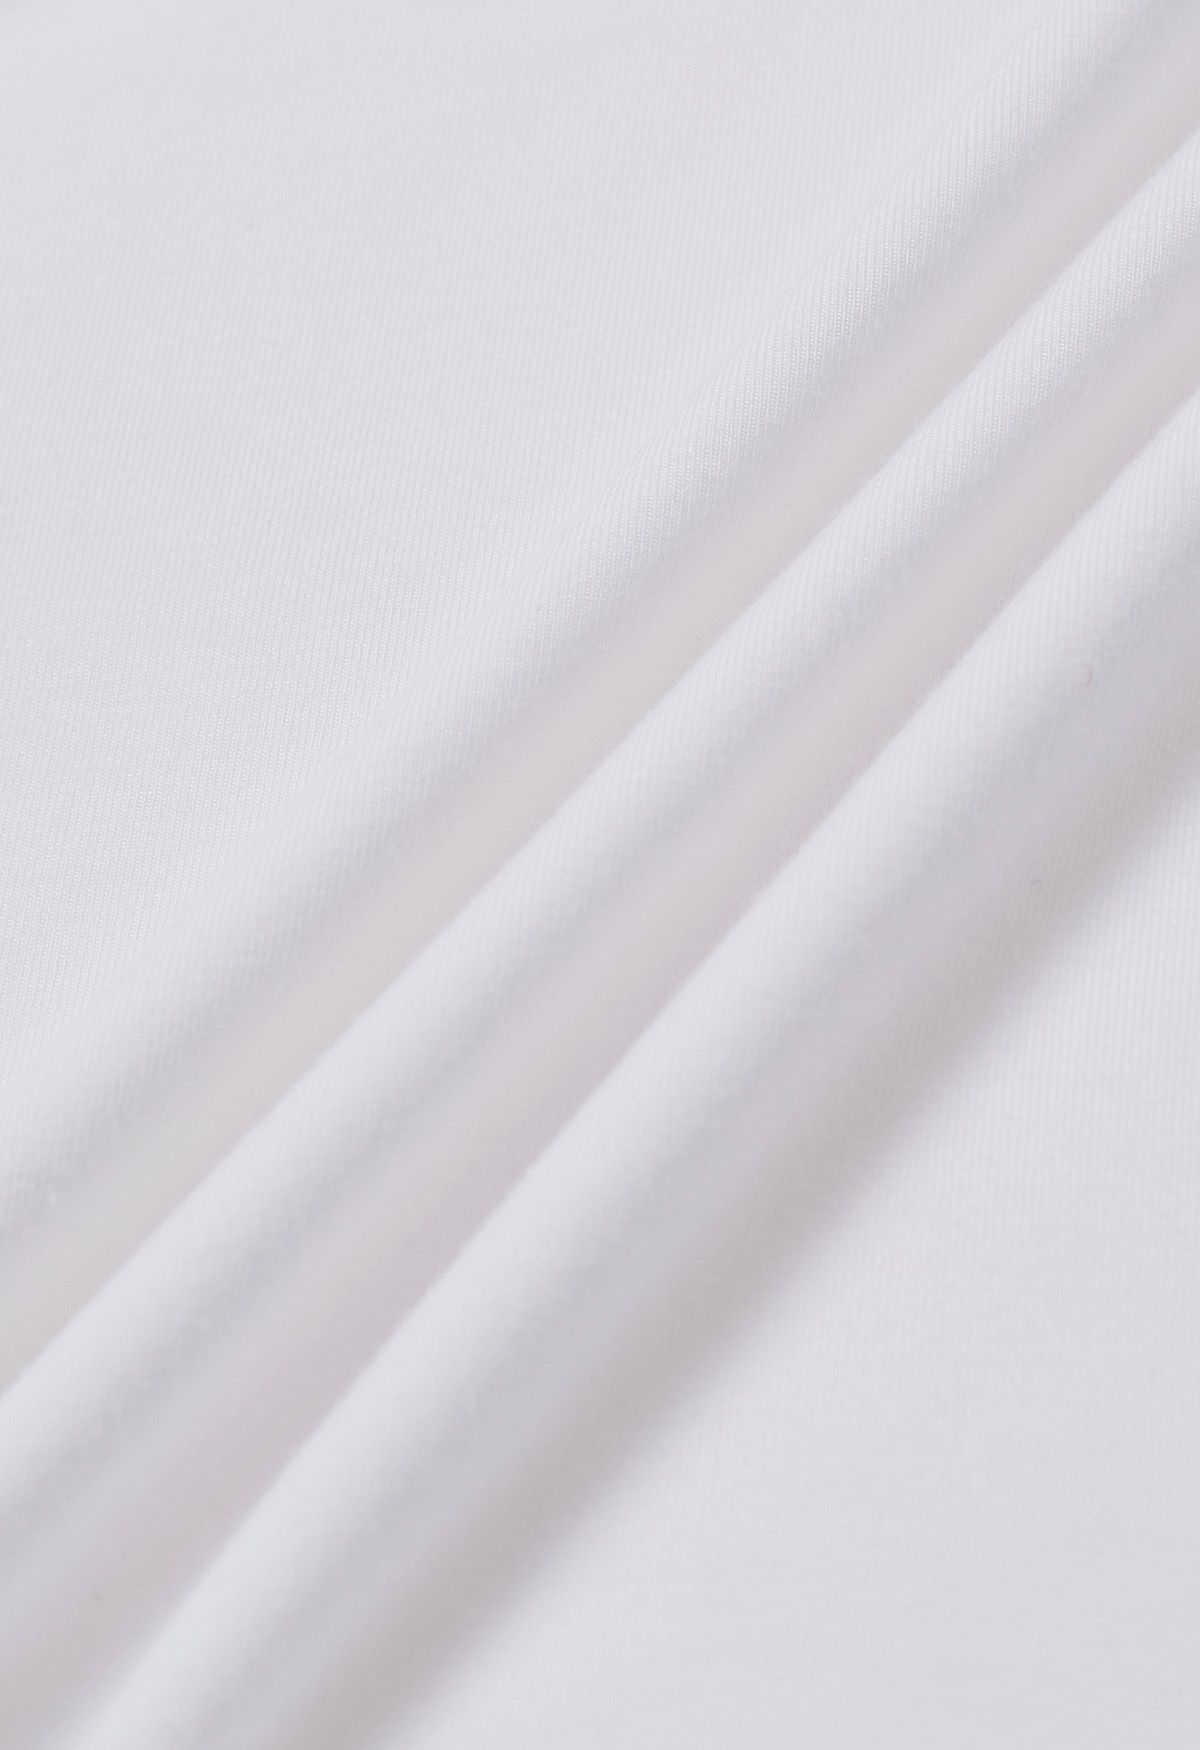 Optimal Halter V-Neck Sleeveless Top in White